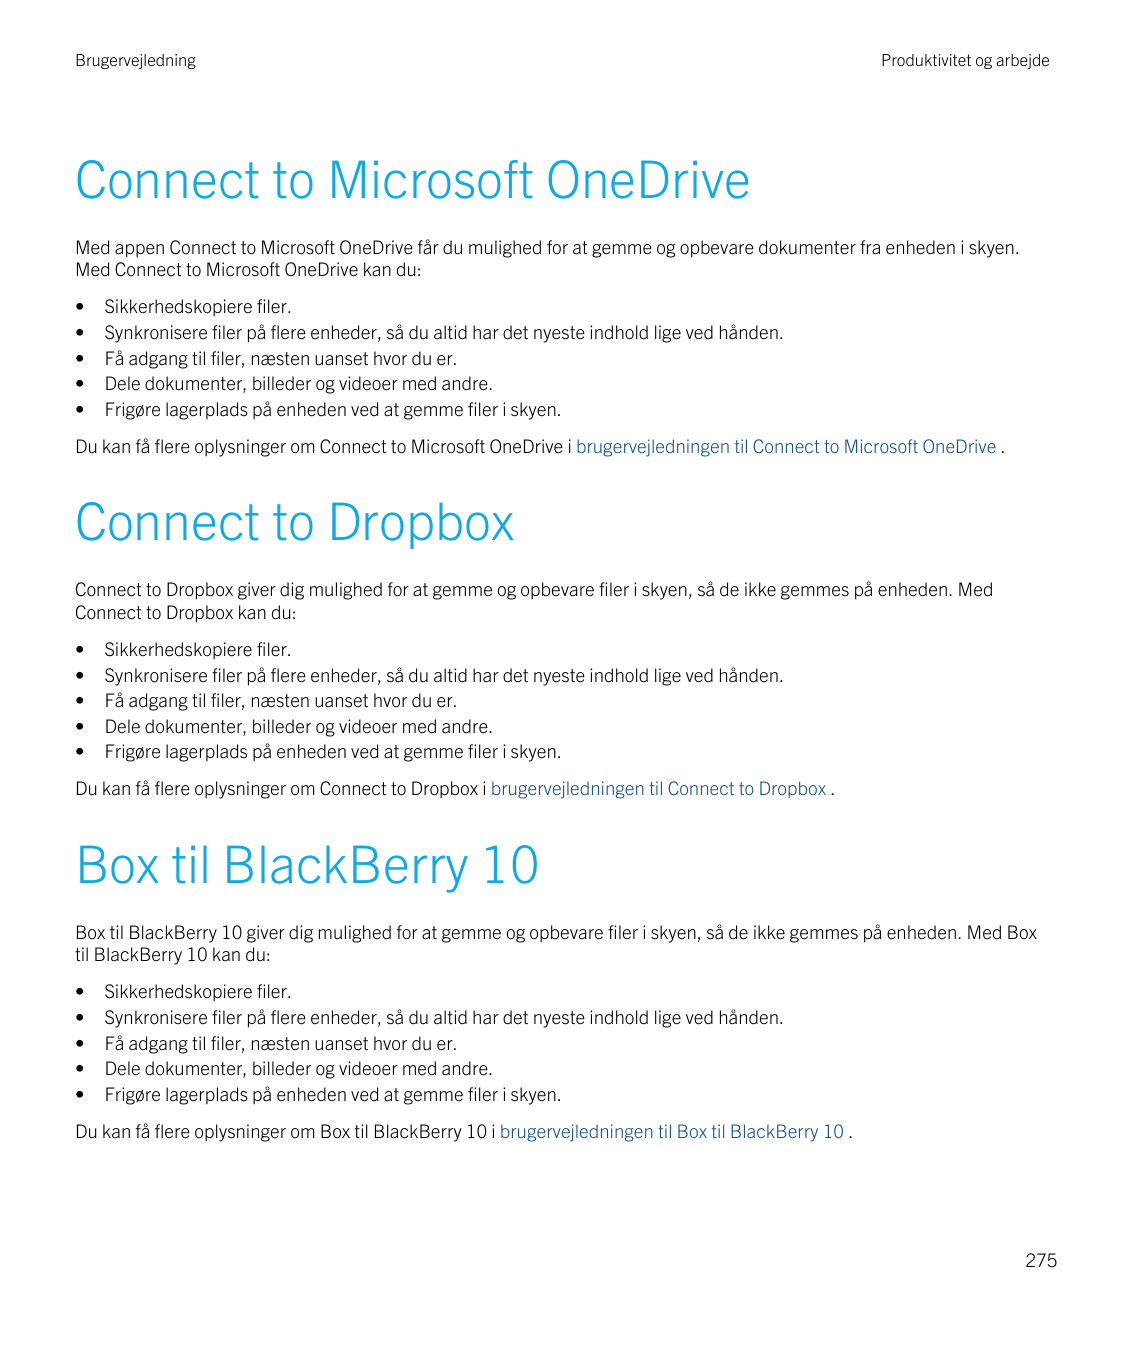 BrugervejledningProduktivitet og arbejdeConnect to Microsoft OneDriveMed appen Connect to Microsoft OneDrive får du mulighed for